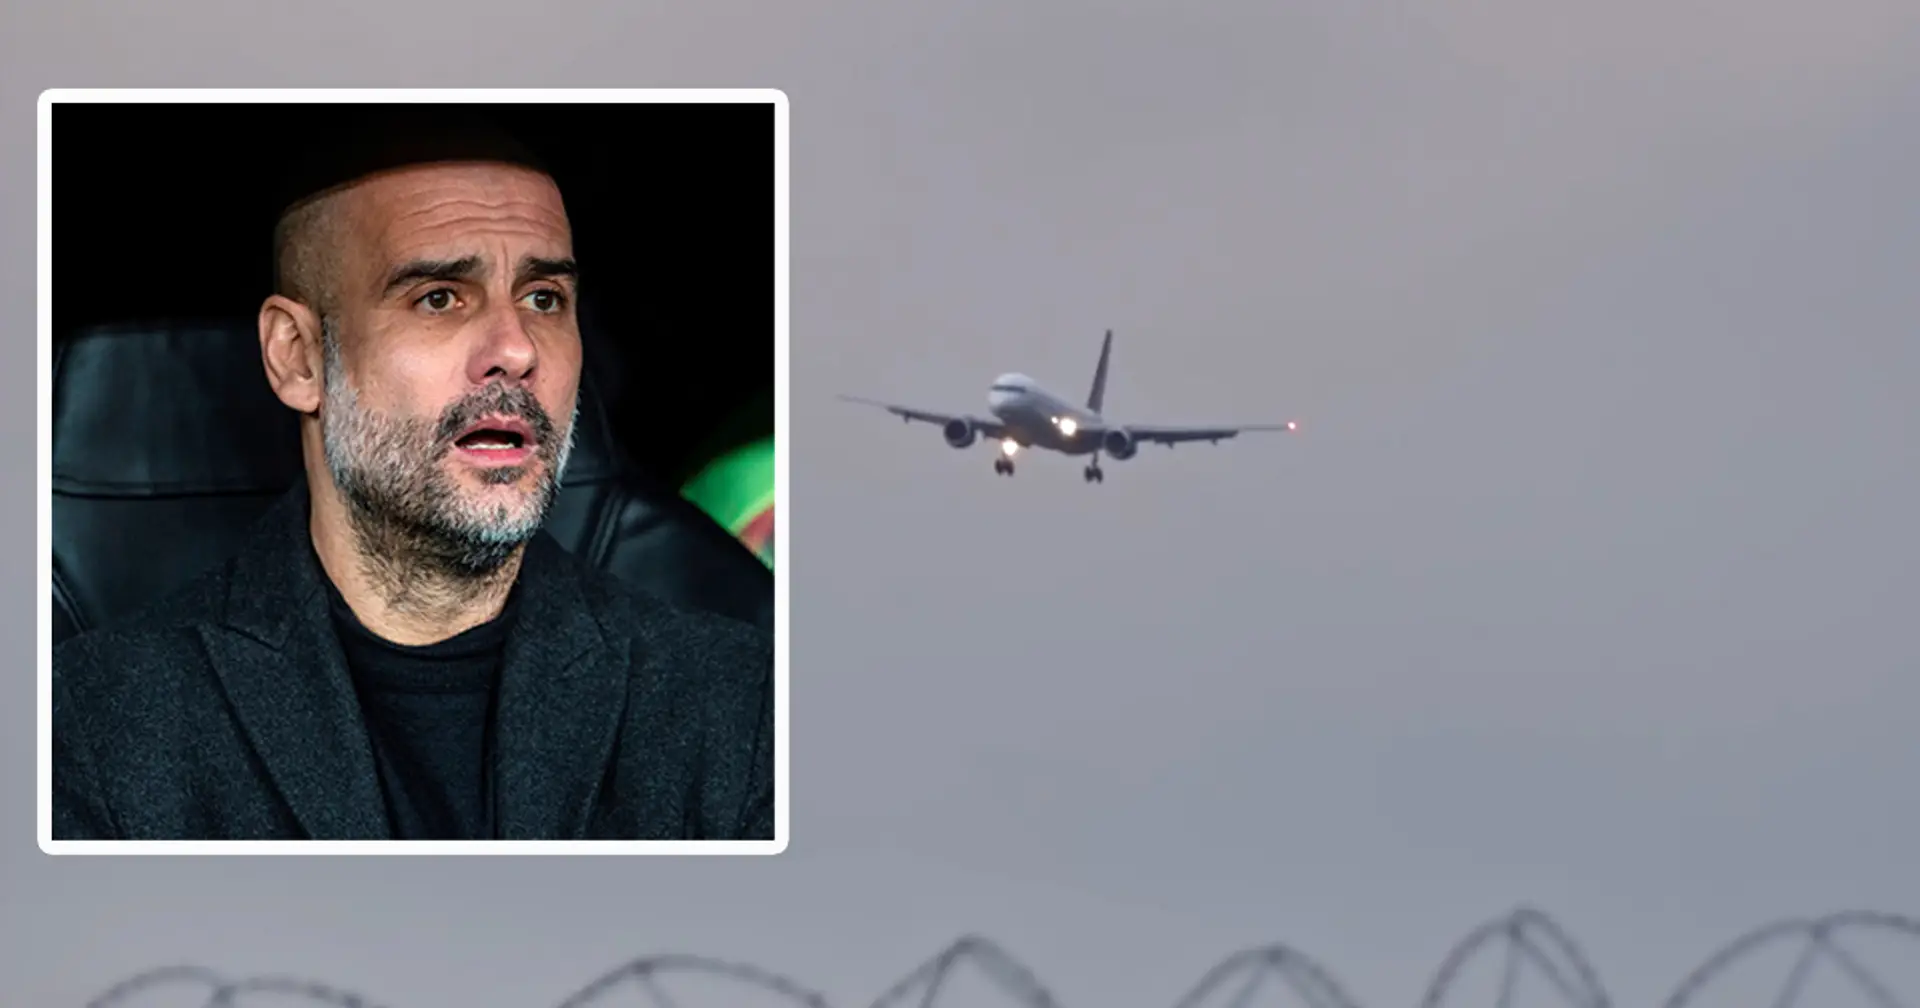 Erschreckendes Video zeigt, dass Team-Flugzeug von Man City gezwungen war, die Landung abzubrechen, nachdem es in der Luft angehalten hatte